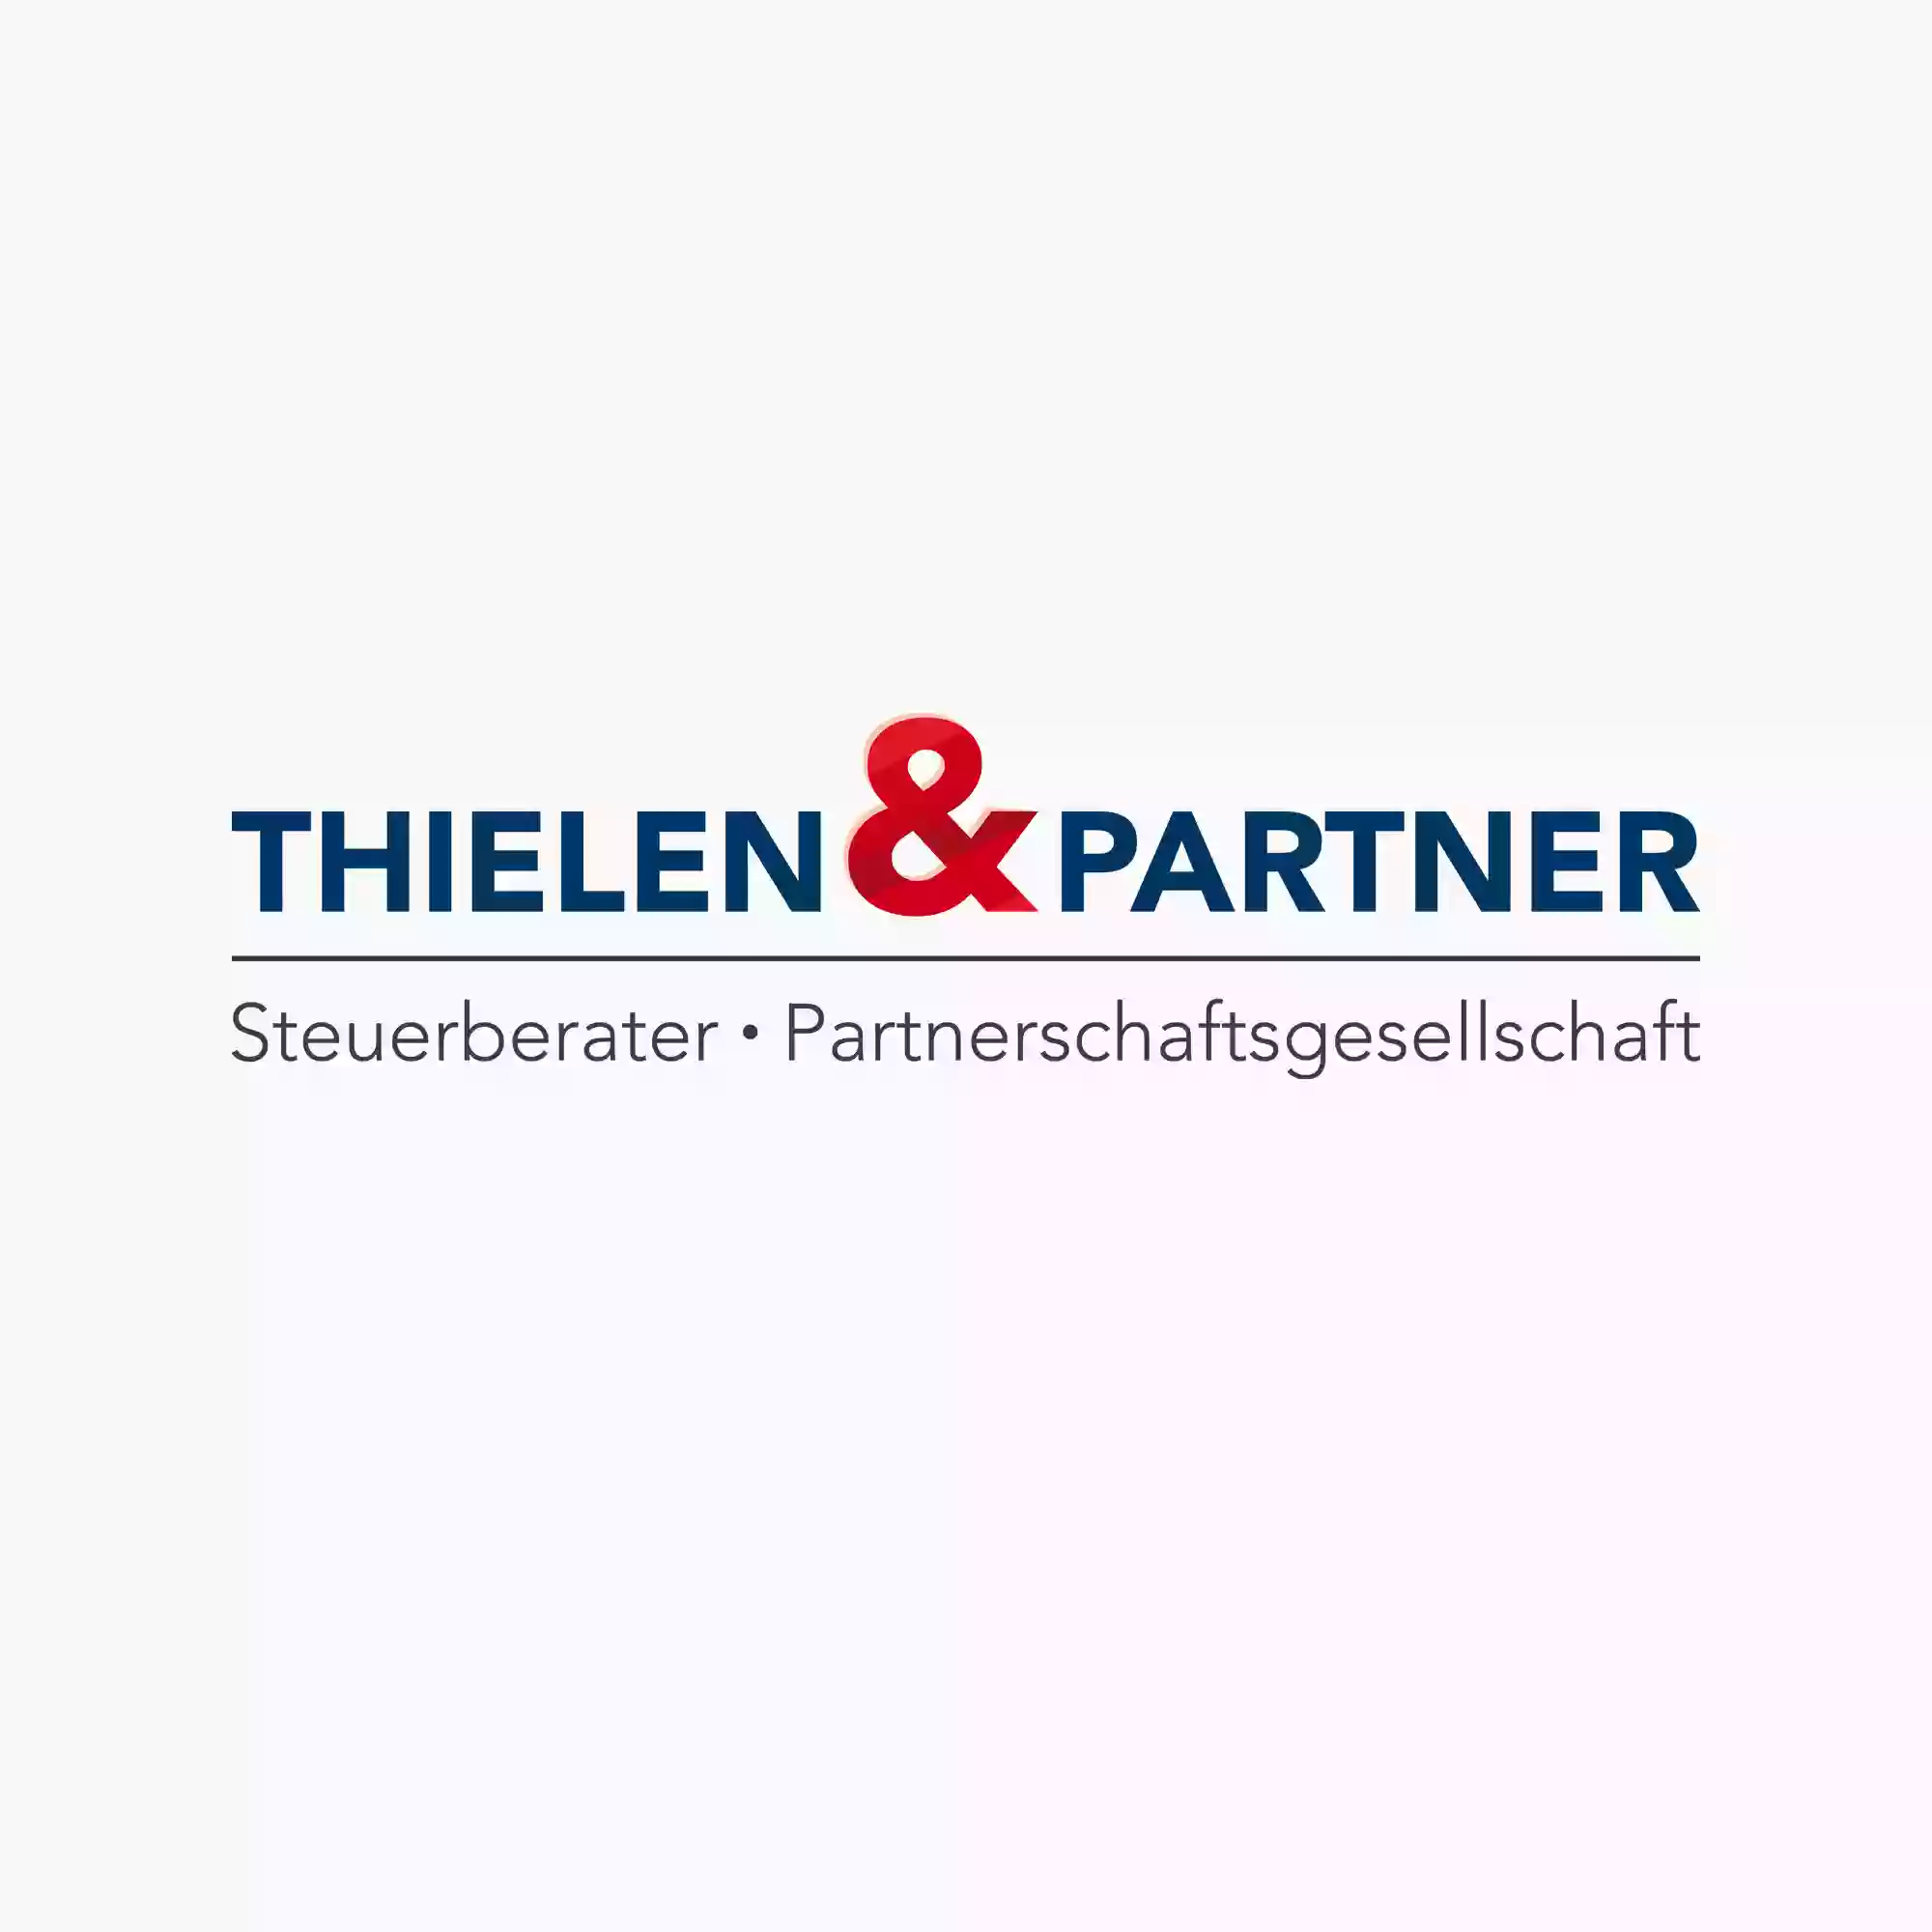 Thielen & Partner Steuerberater - Partnerschaftsgesellschaft